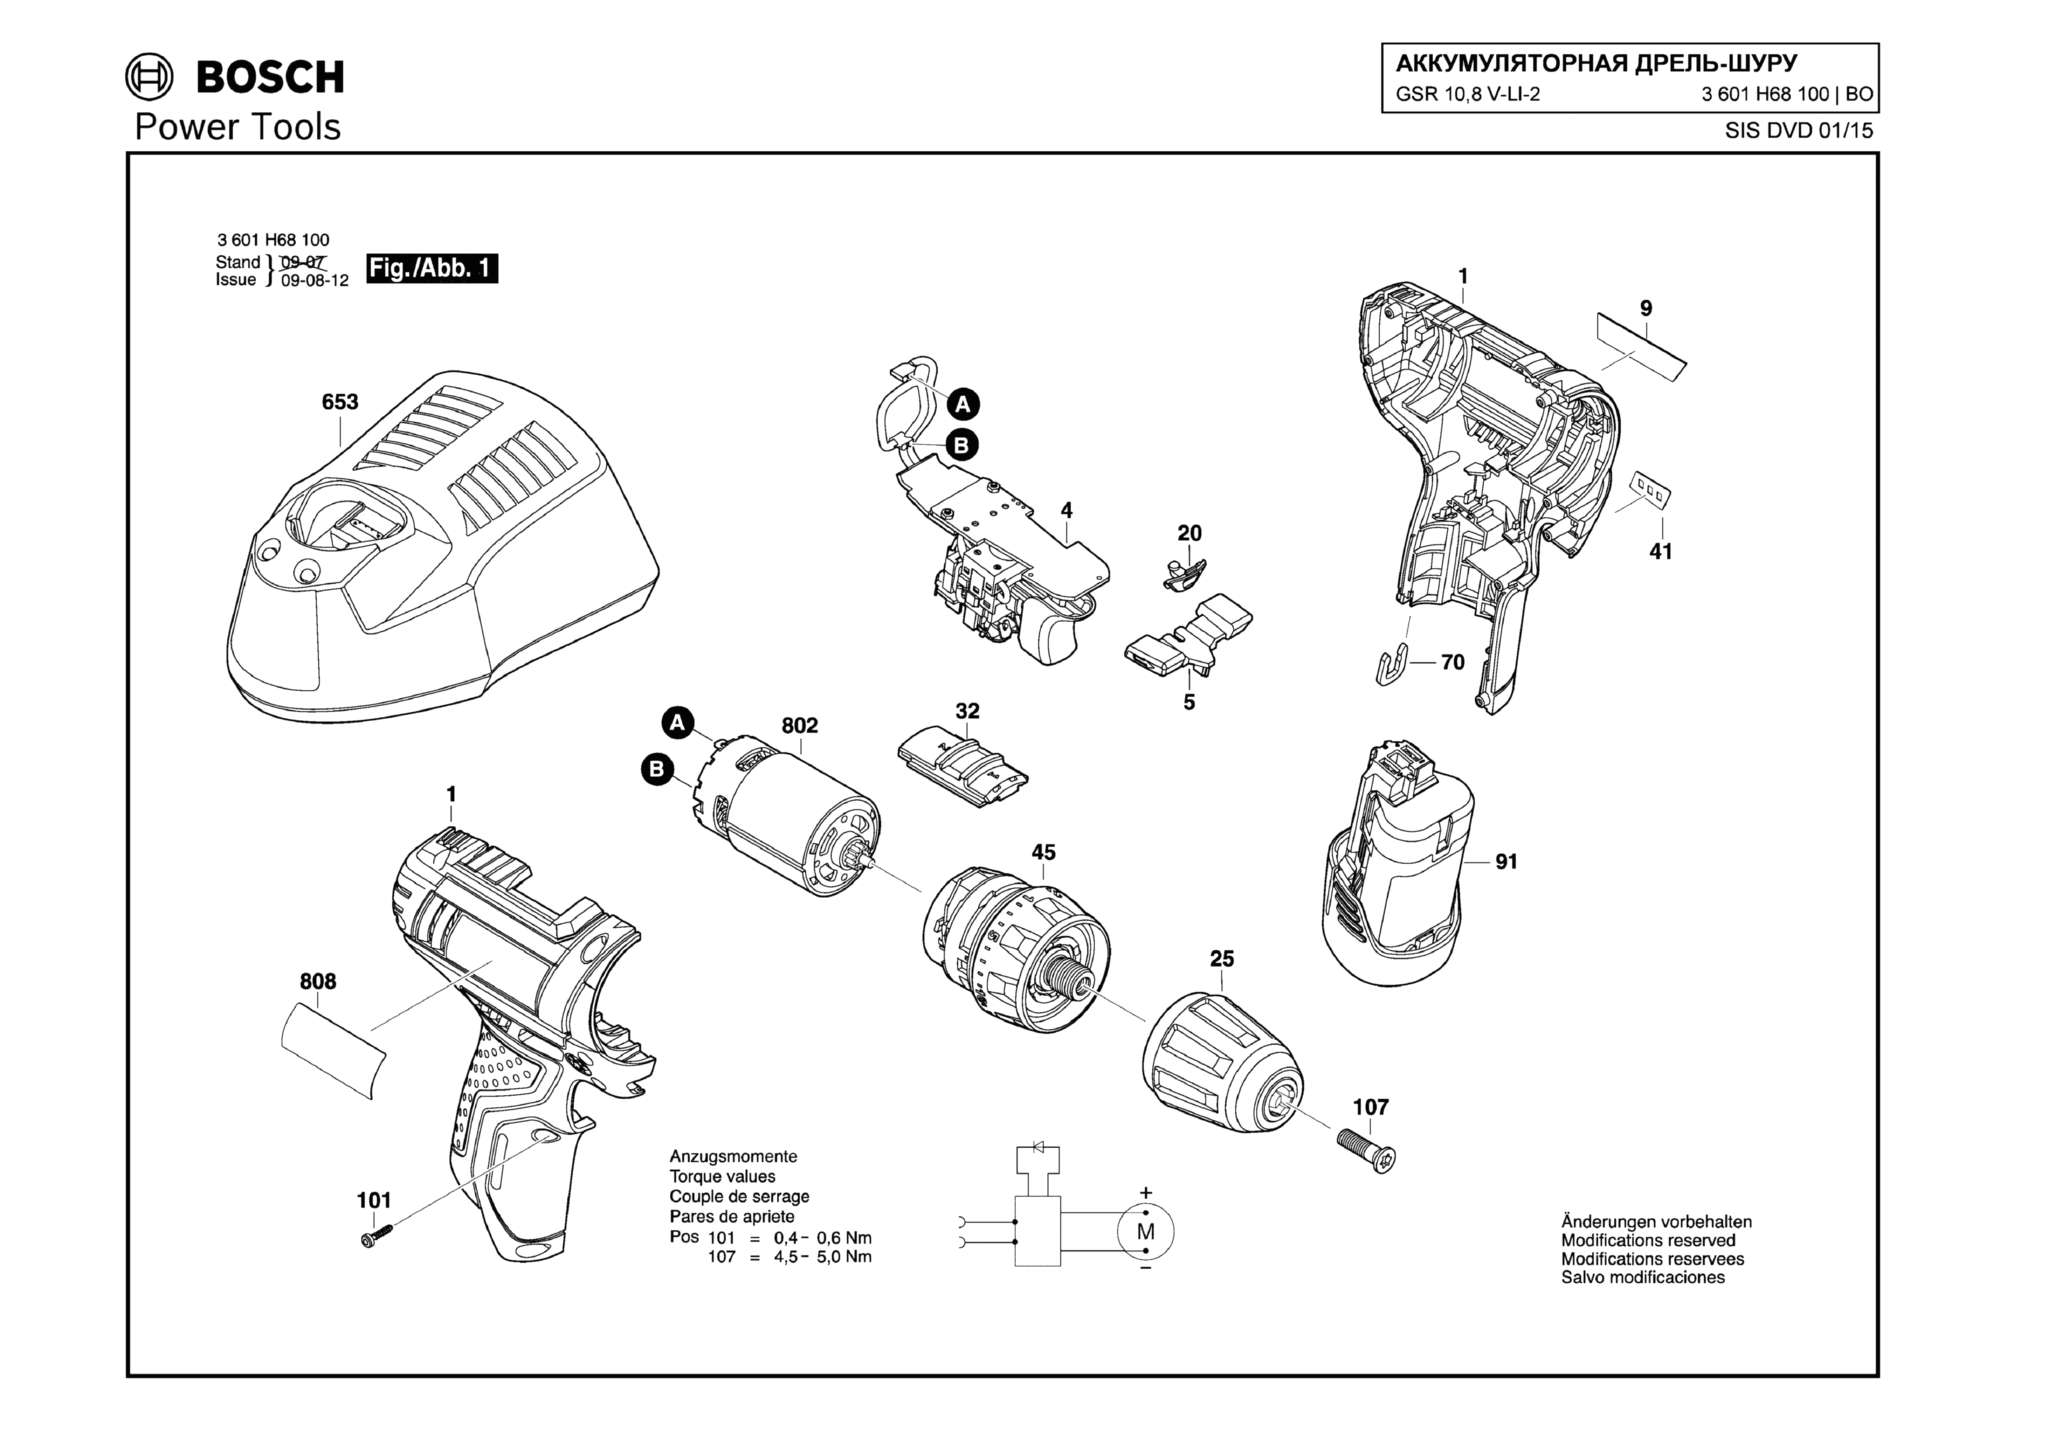 Запчасти, схема и деталировка Bosch GSR 10,8 V-LI-2 (ТИП 3601H68100)